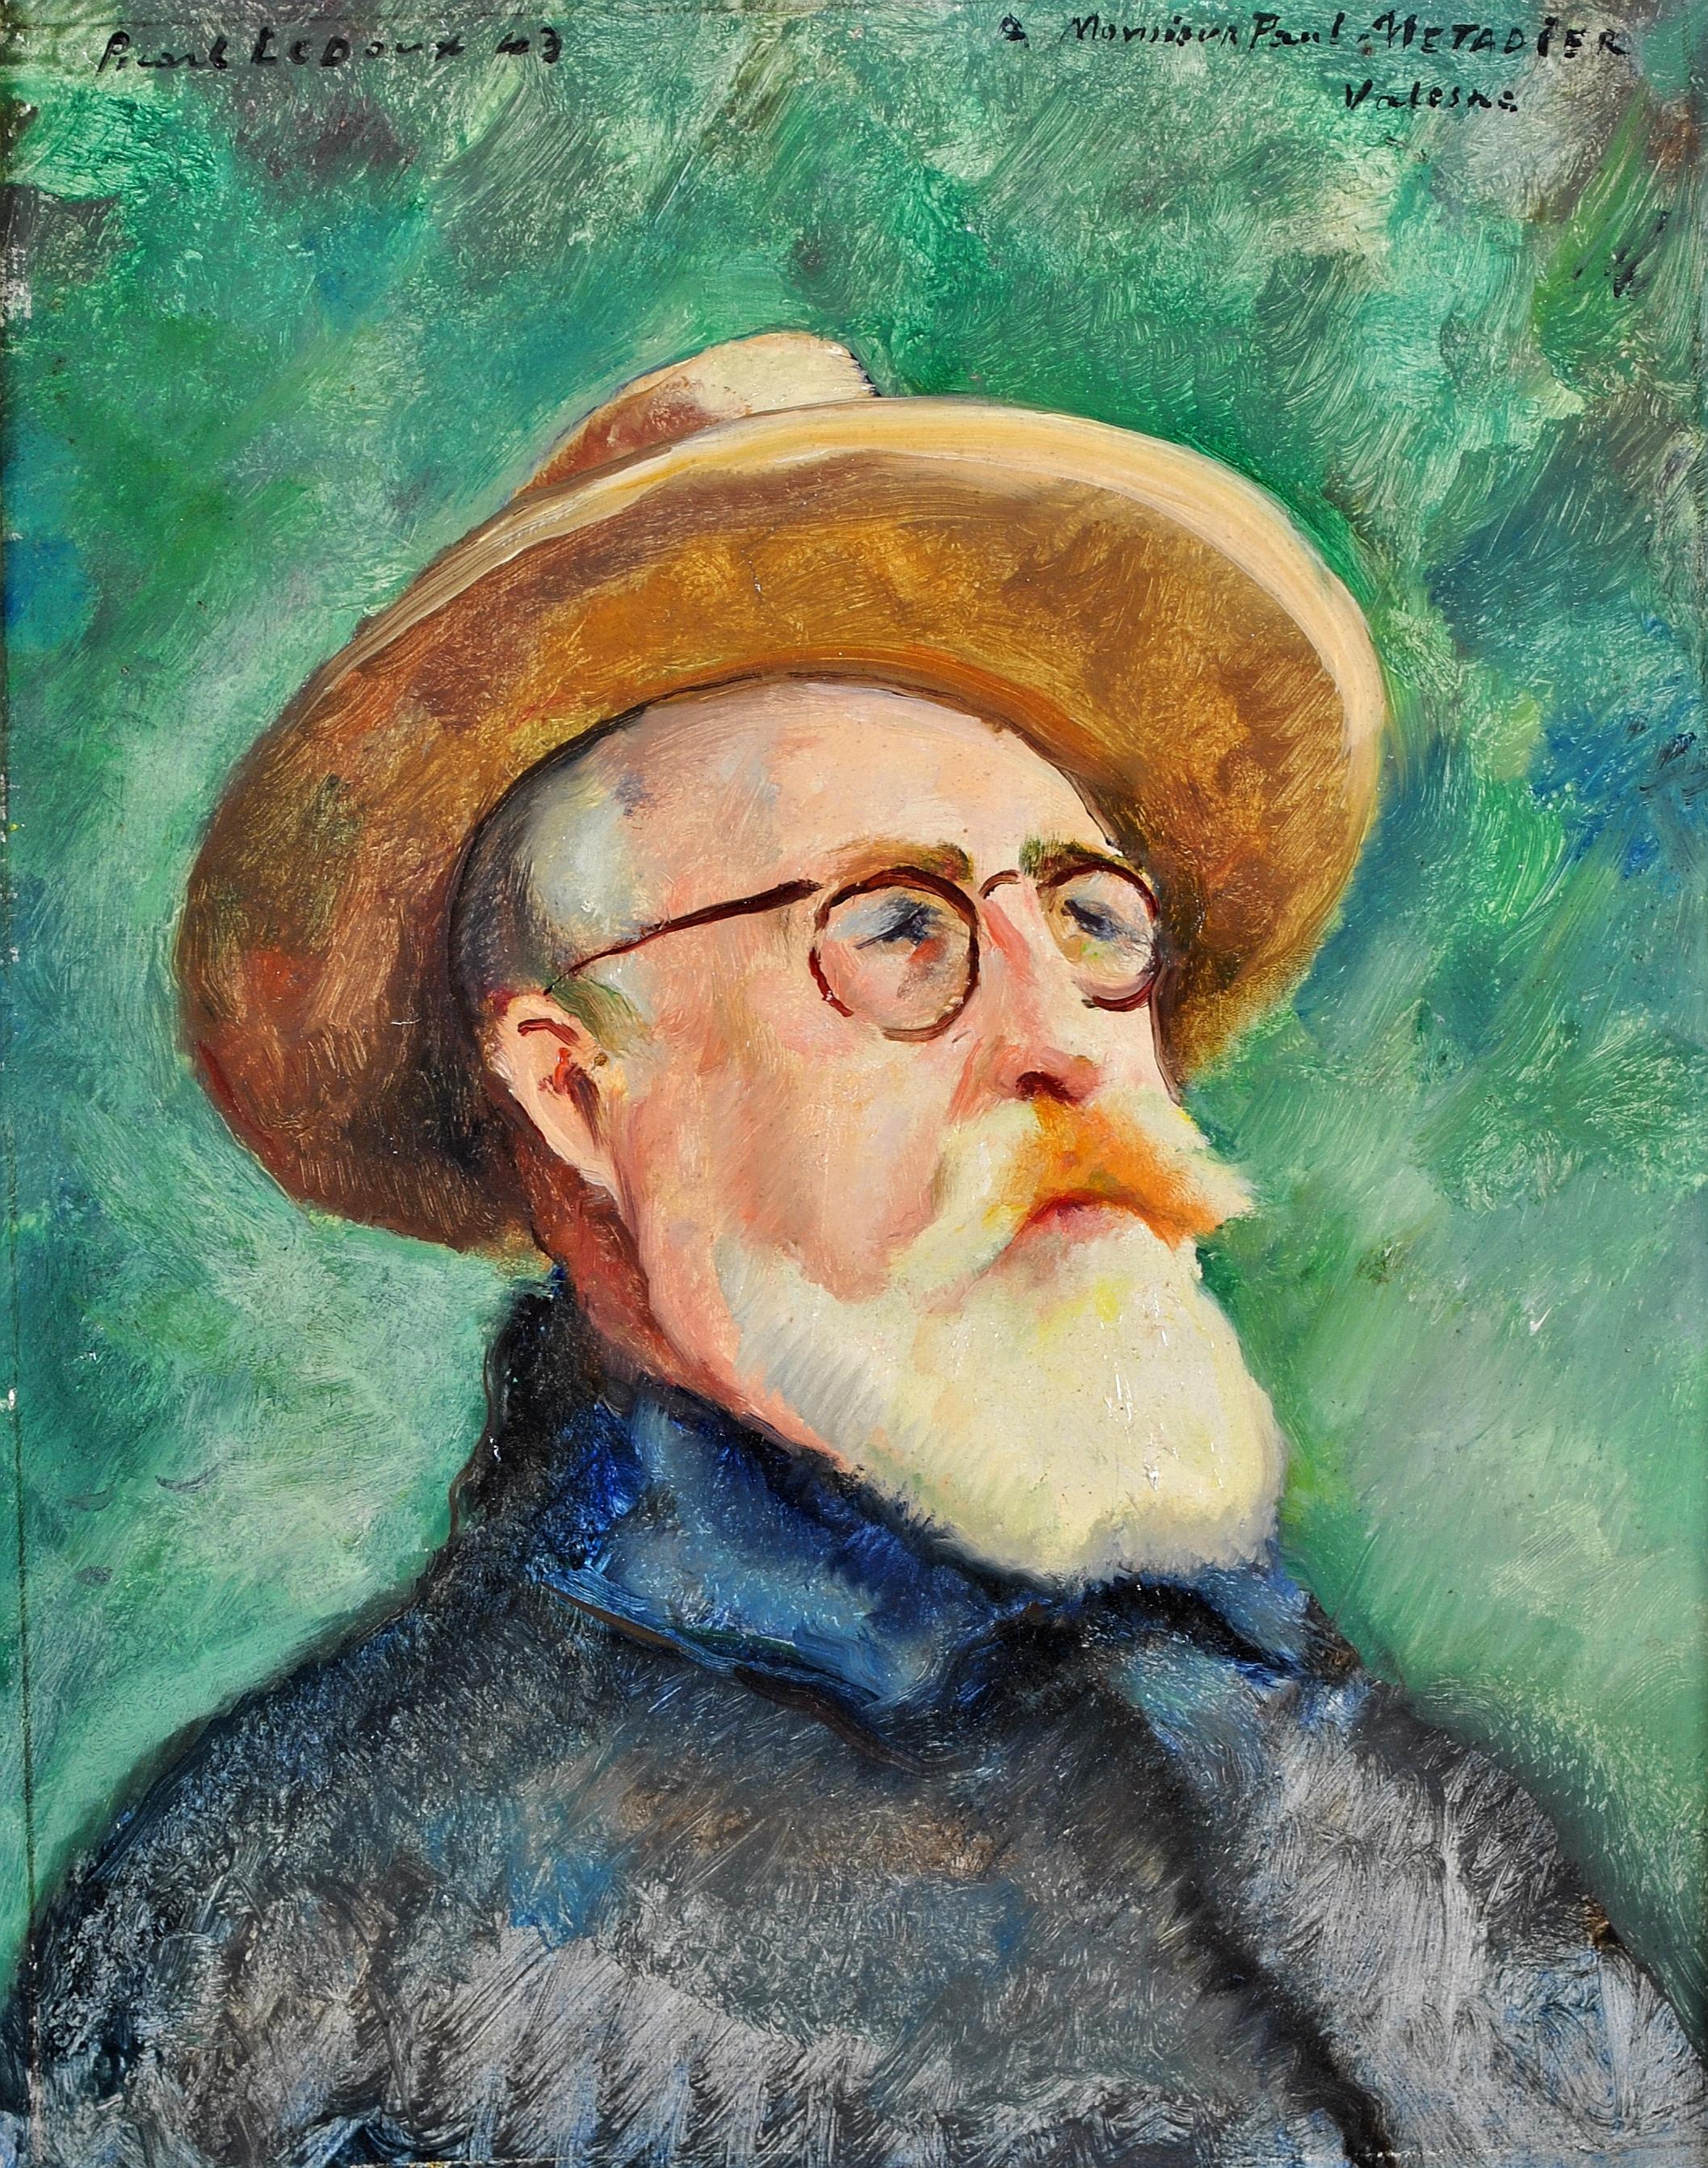 Self Portrait - Peinture impressionniste française du milieu du 20e siècle - Huile sur panneau - Painting de Charles Picart le Doux